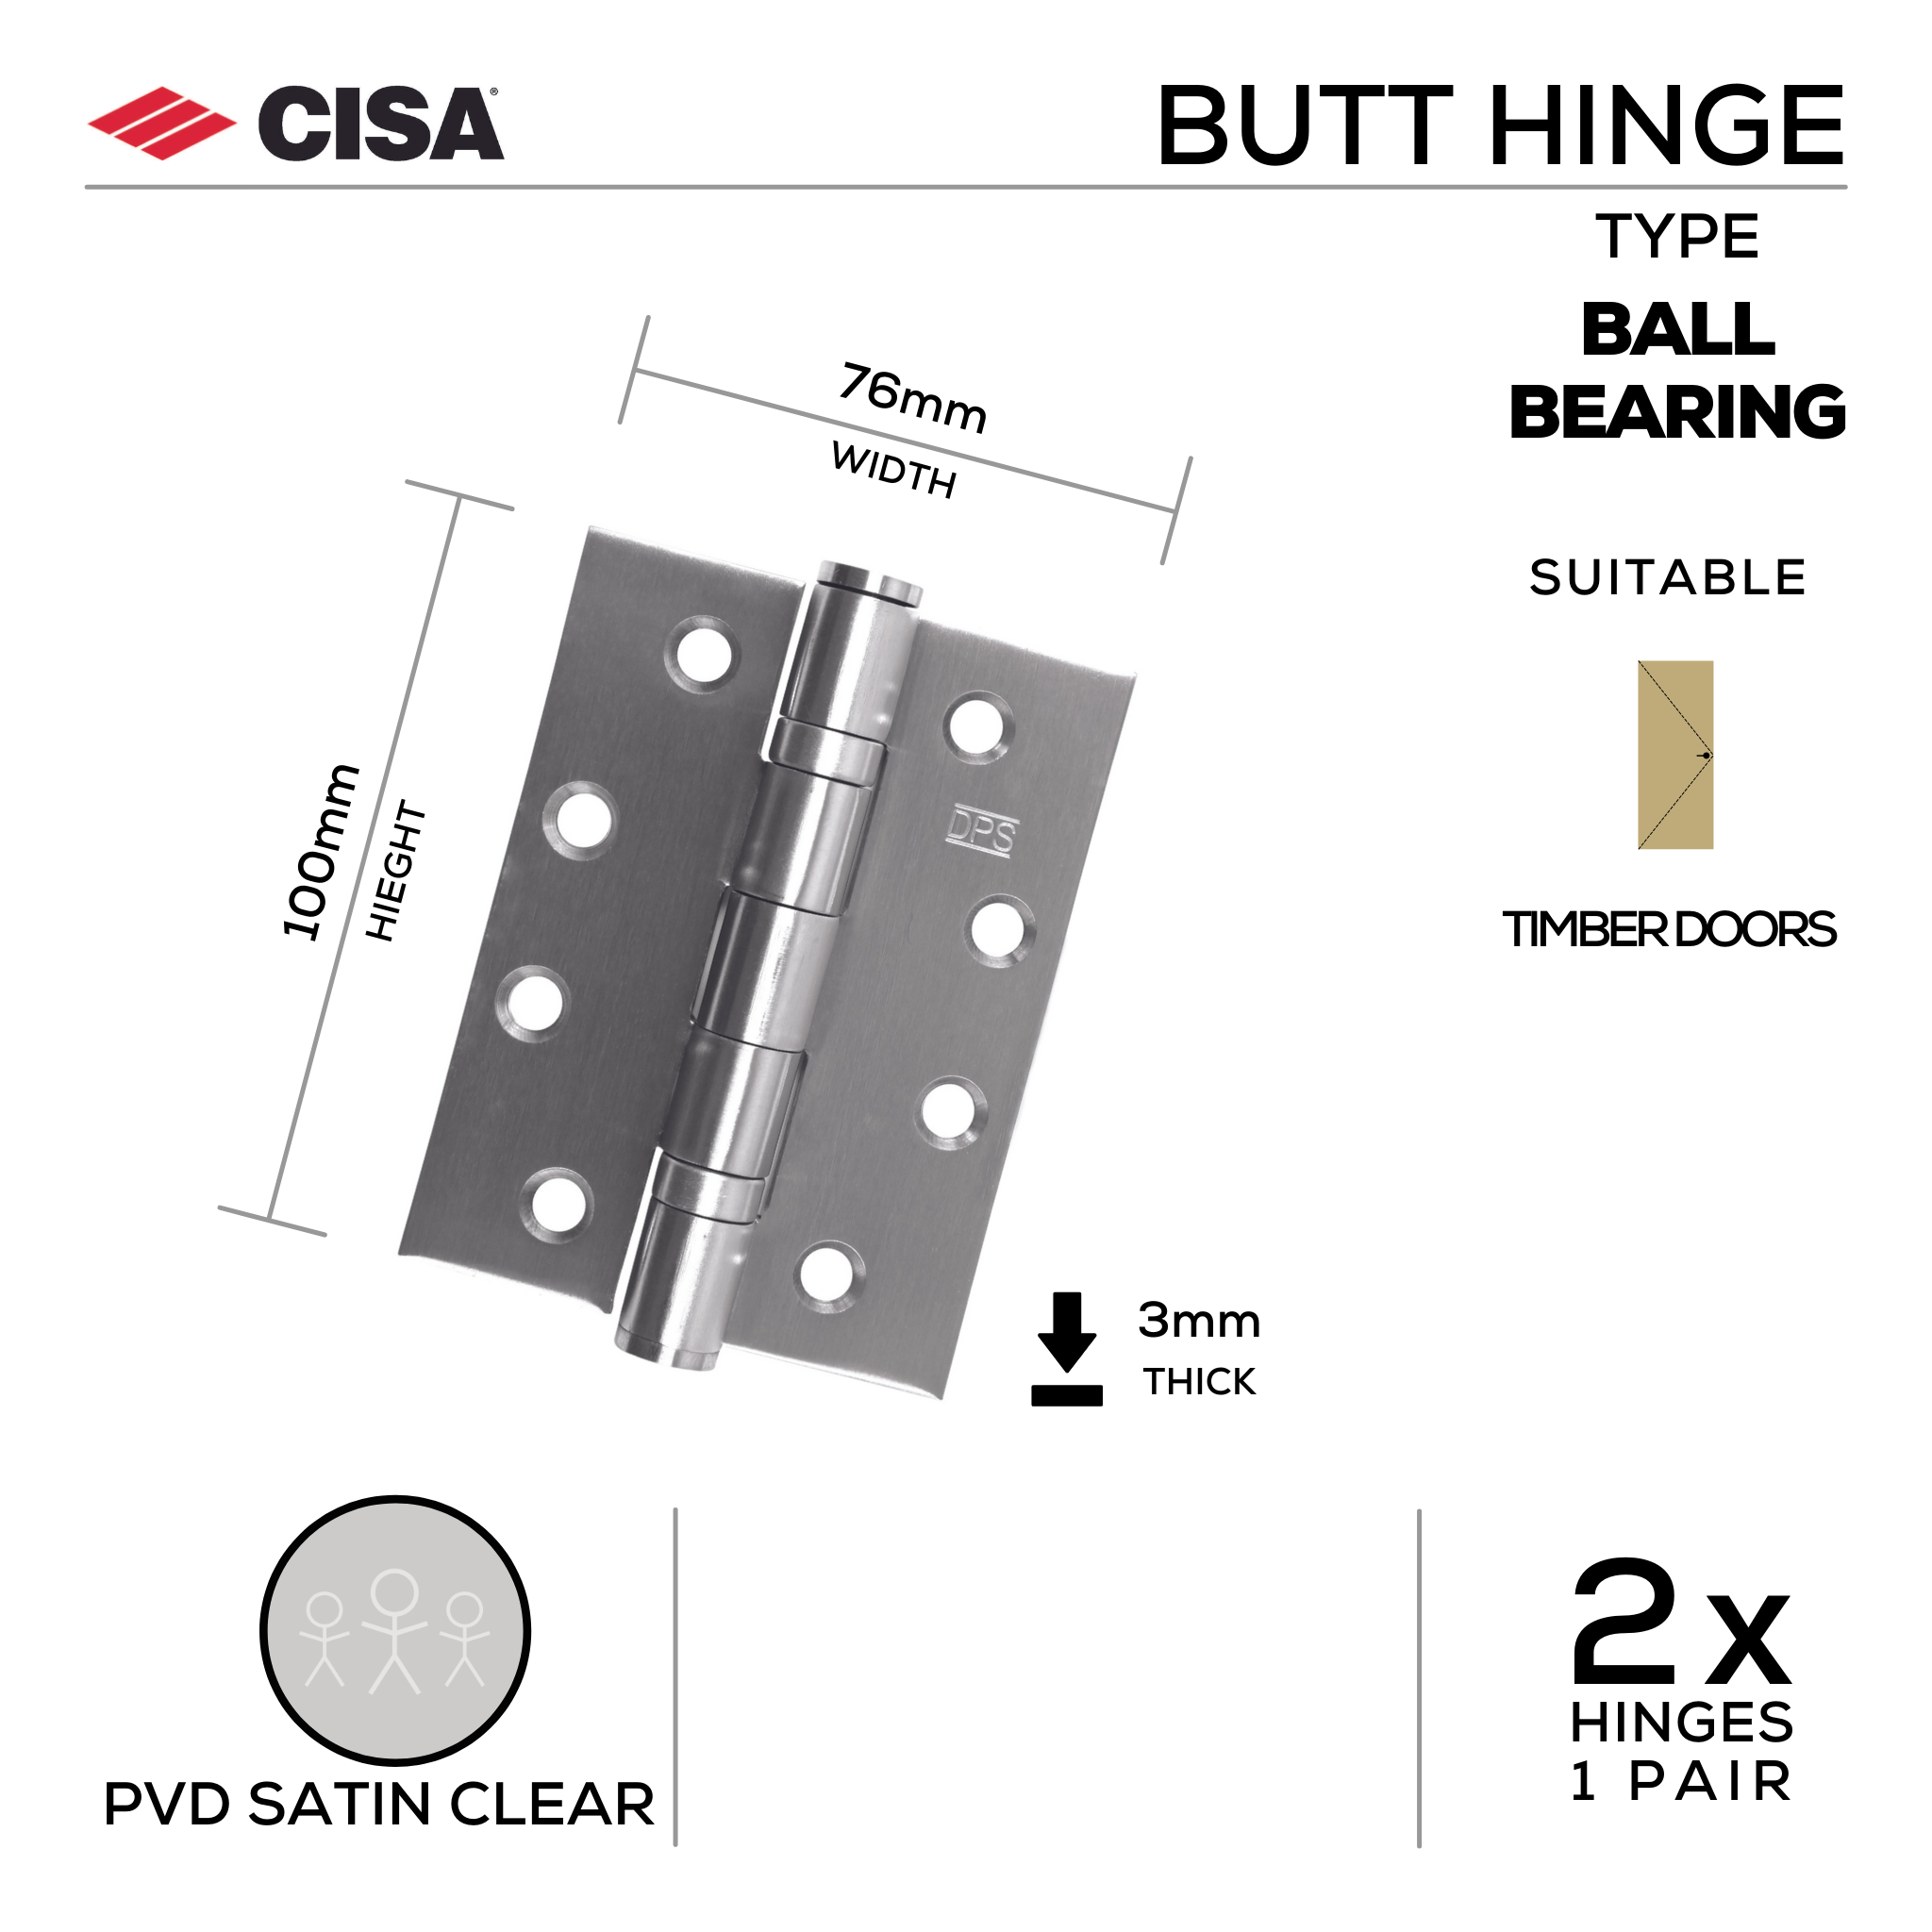 FH76X3B-TR, Butt Hinge, Double Ball Bearing, 2 x Hinges (1 Pair), 100mm (h) x 76mm (w) x 3mm (t), PVD Satin Clear, CISA